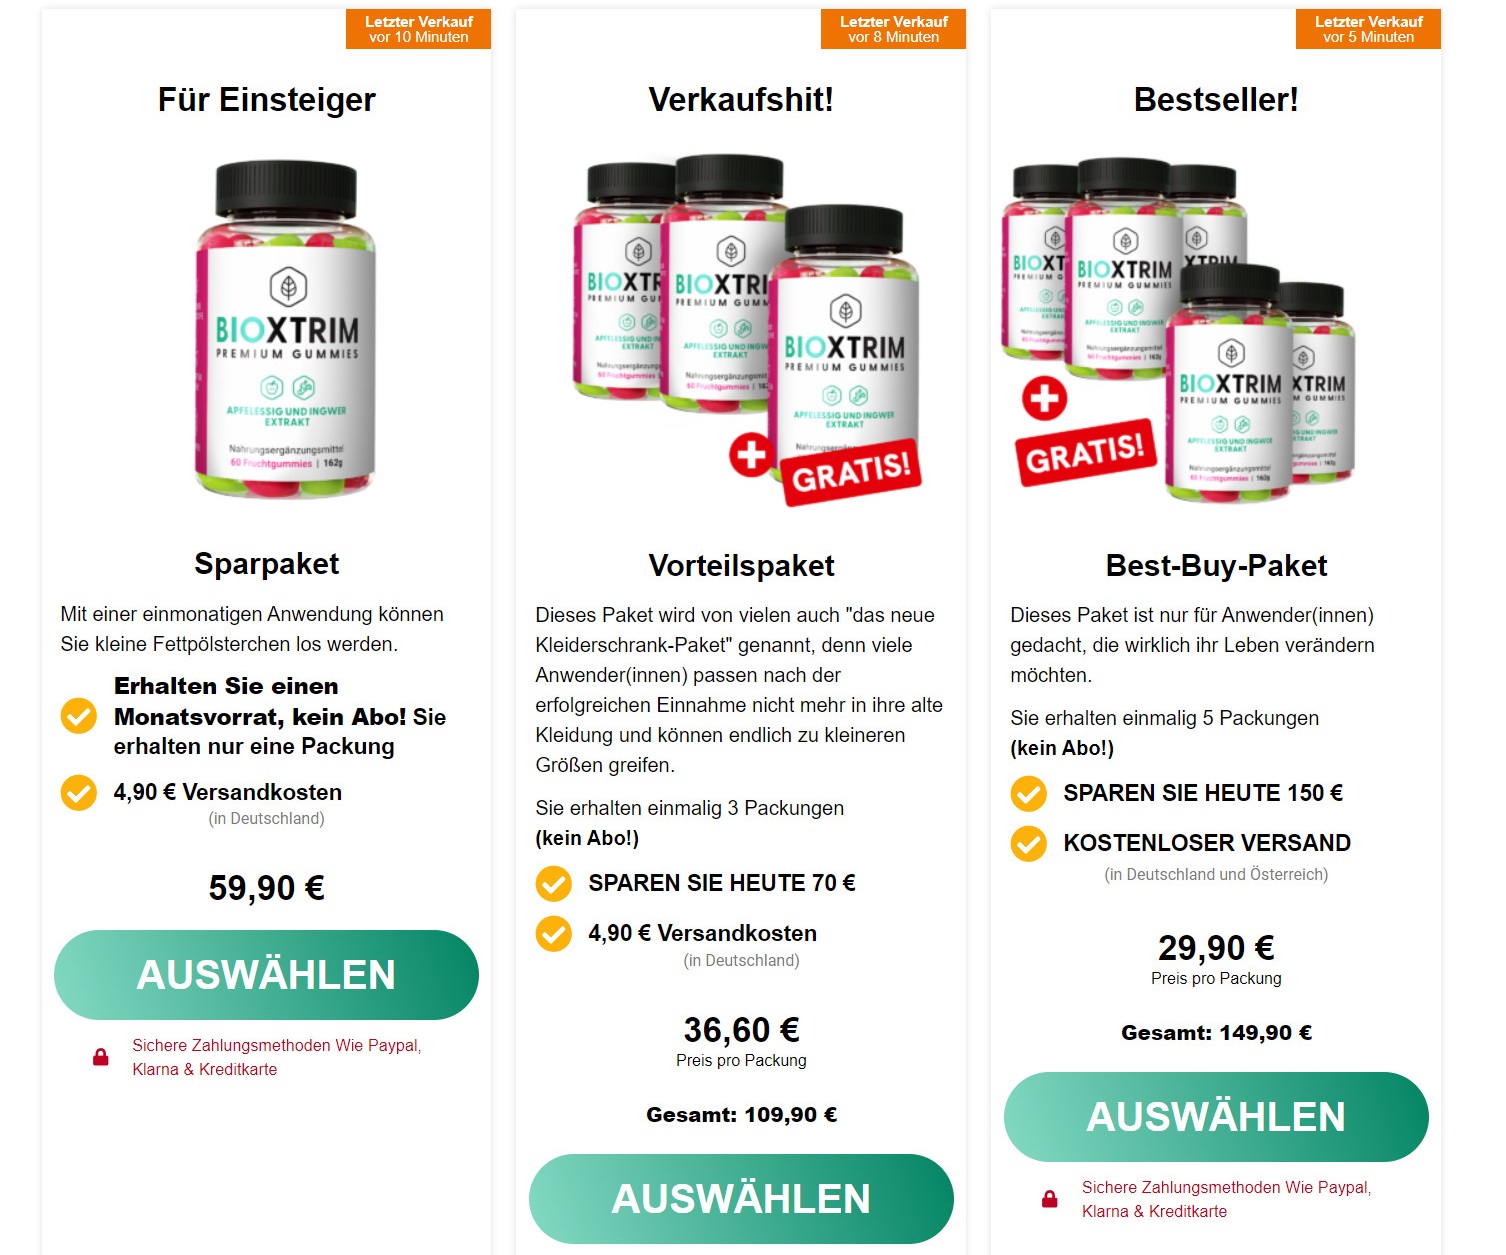 BioXtrim Premium Gummies DE, AT, CH Price